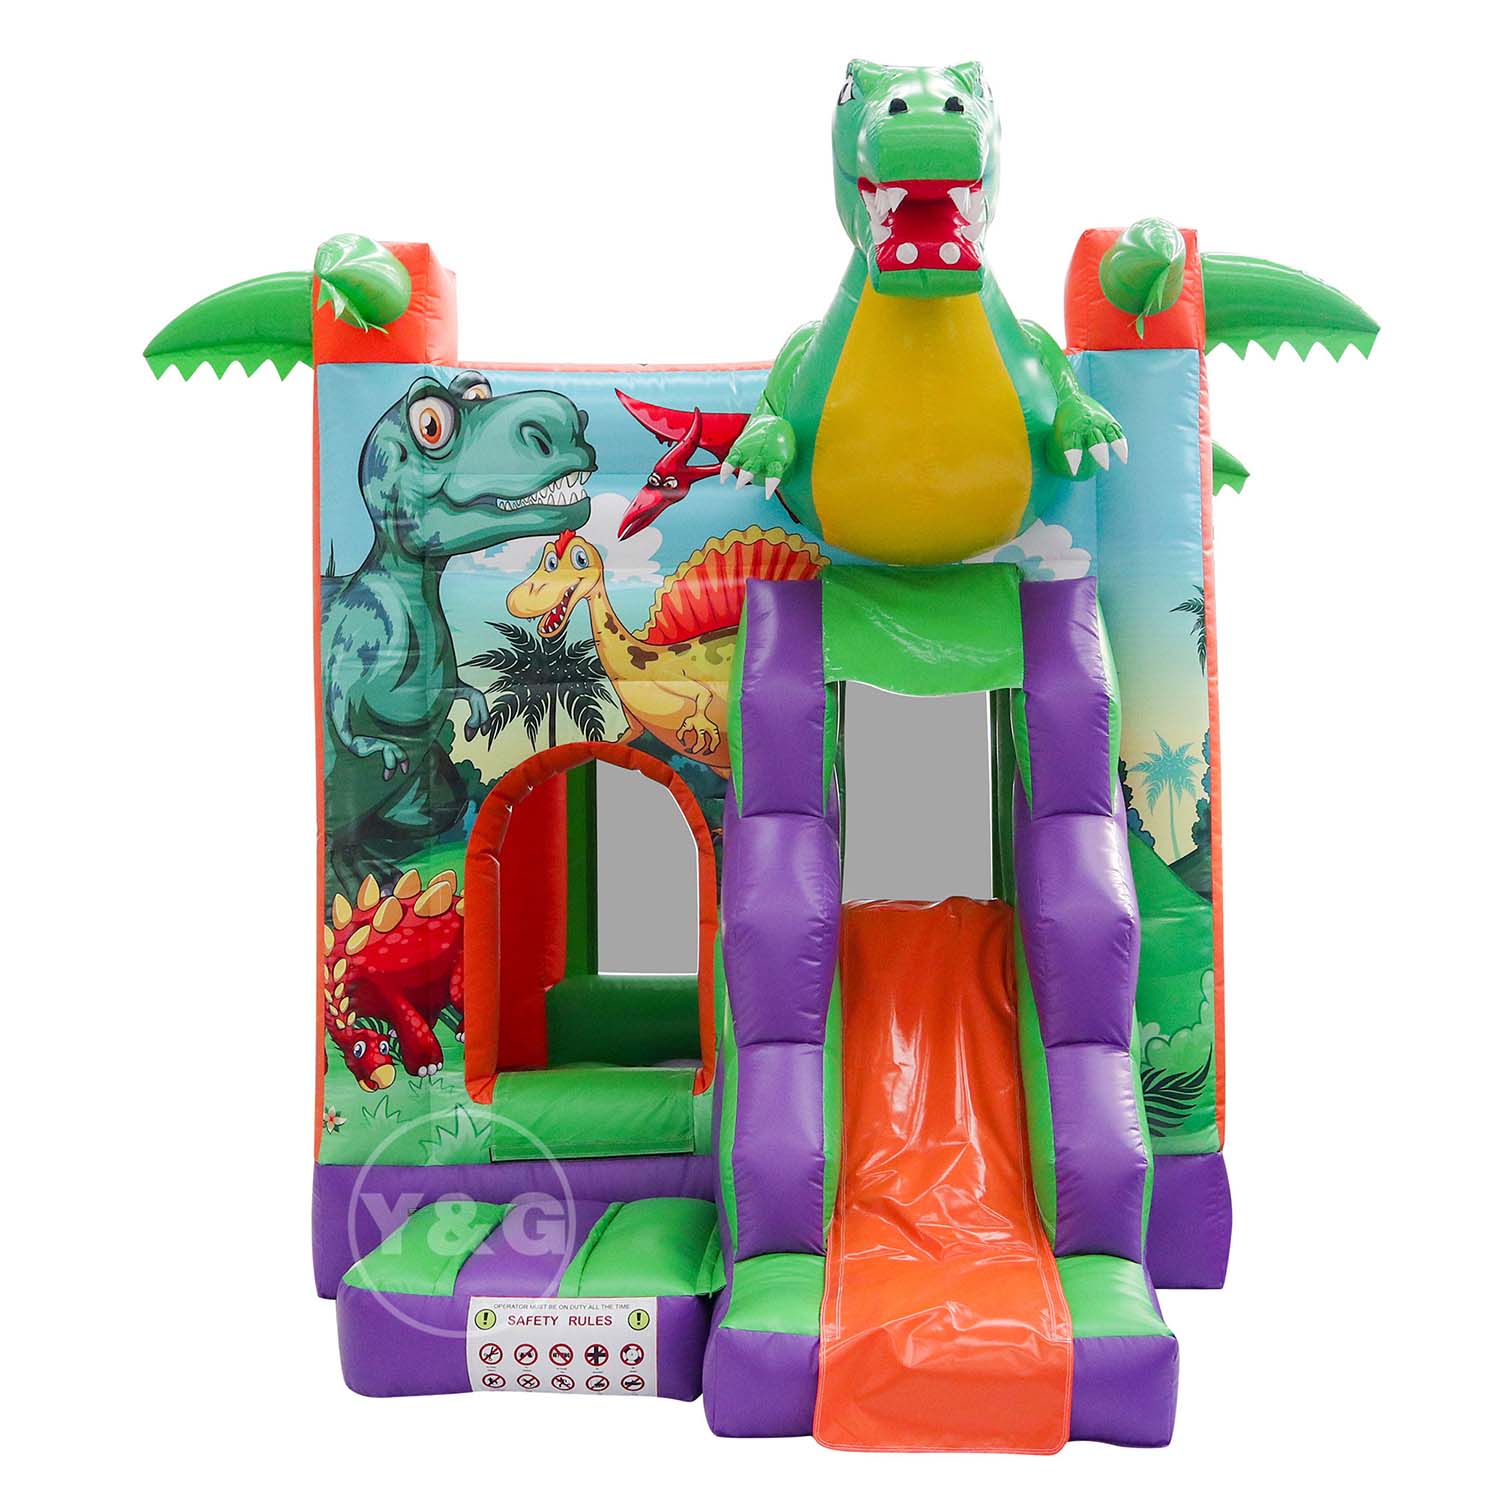 Cute Dinosaur Inflatable Bounce HouseYYG-153